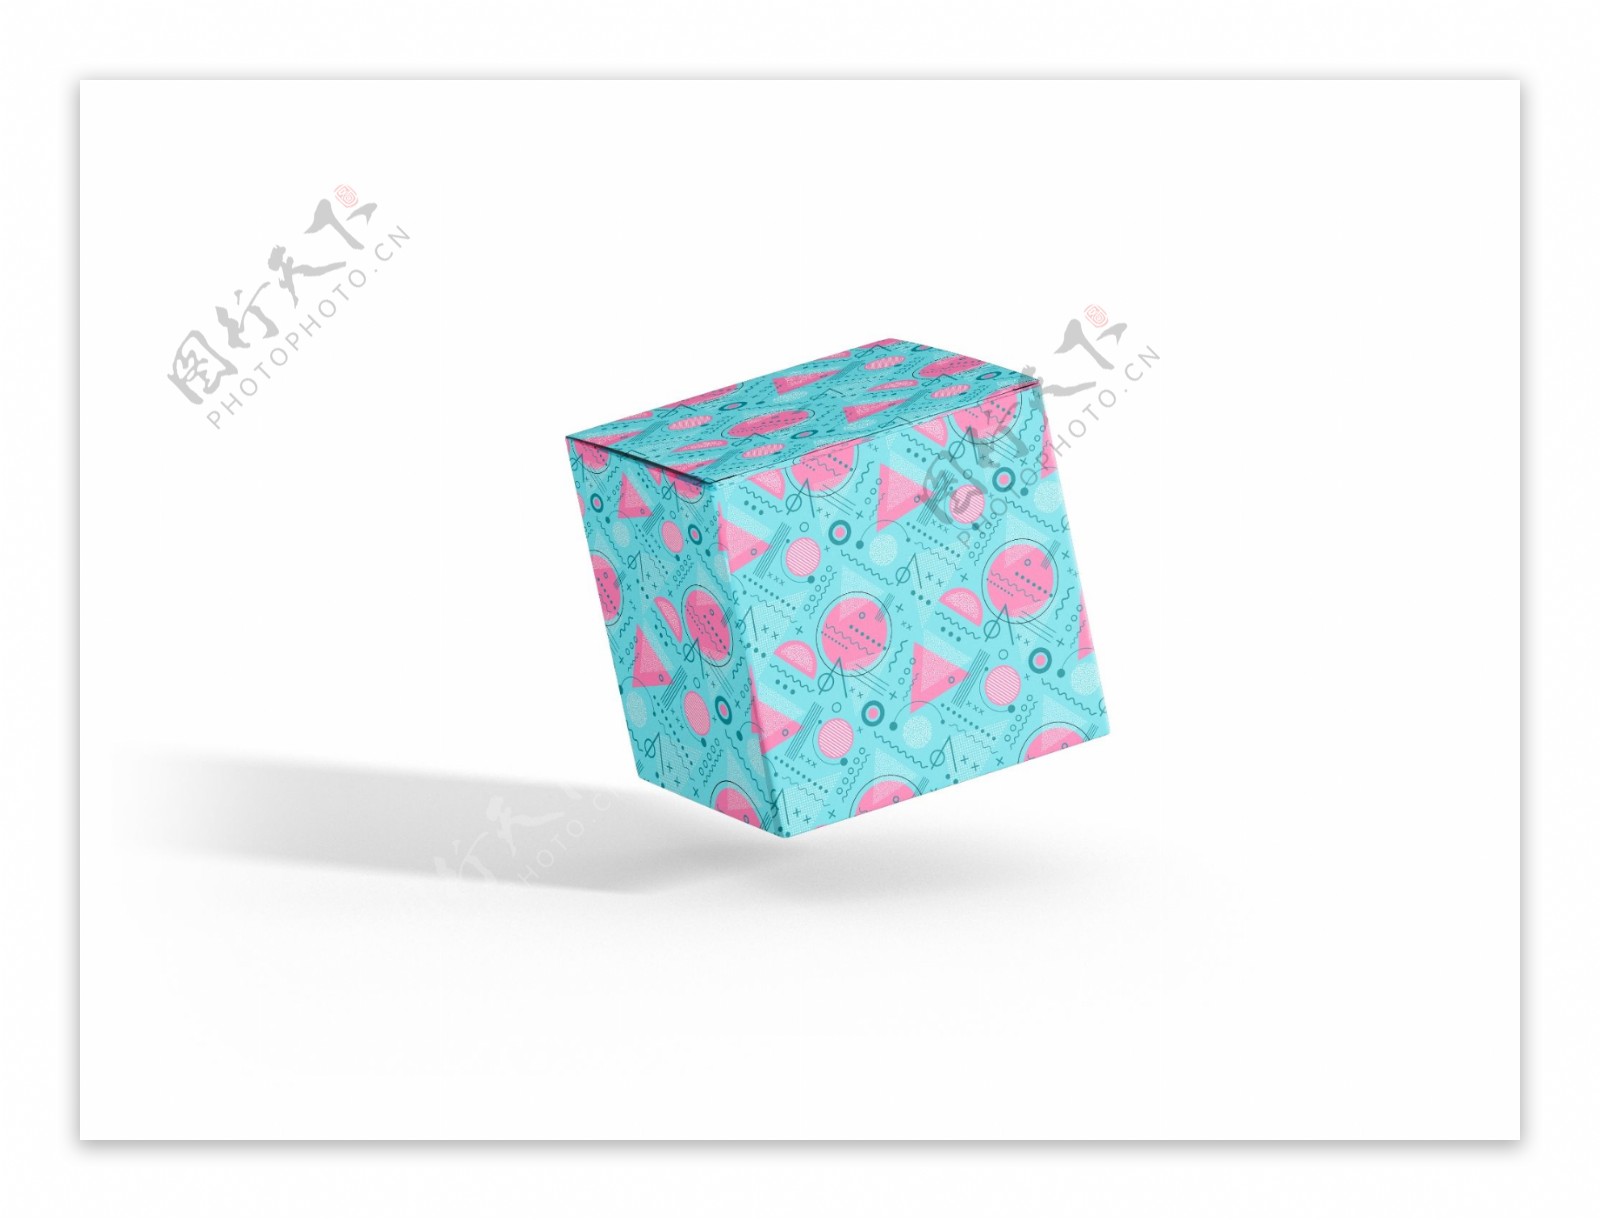 正方形纸盒包装效果图